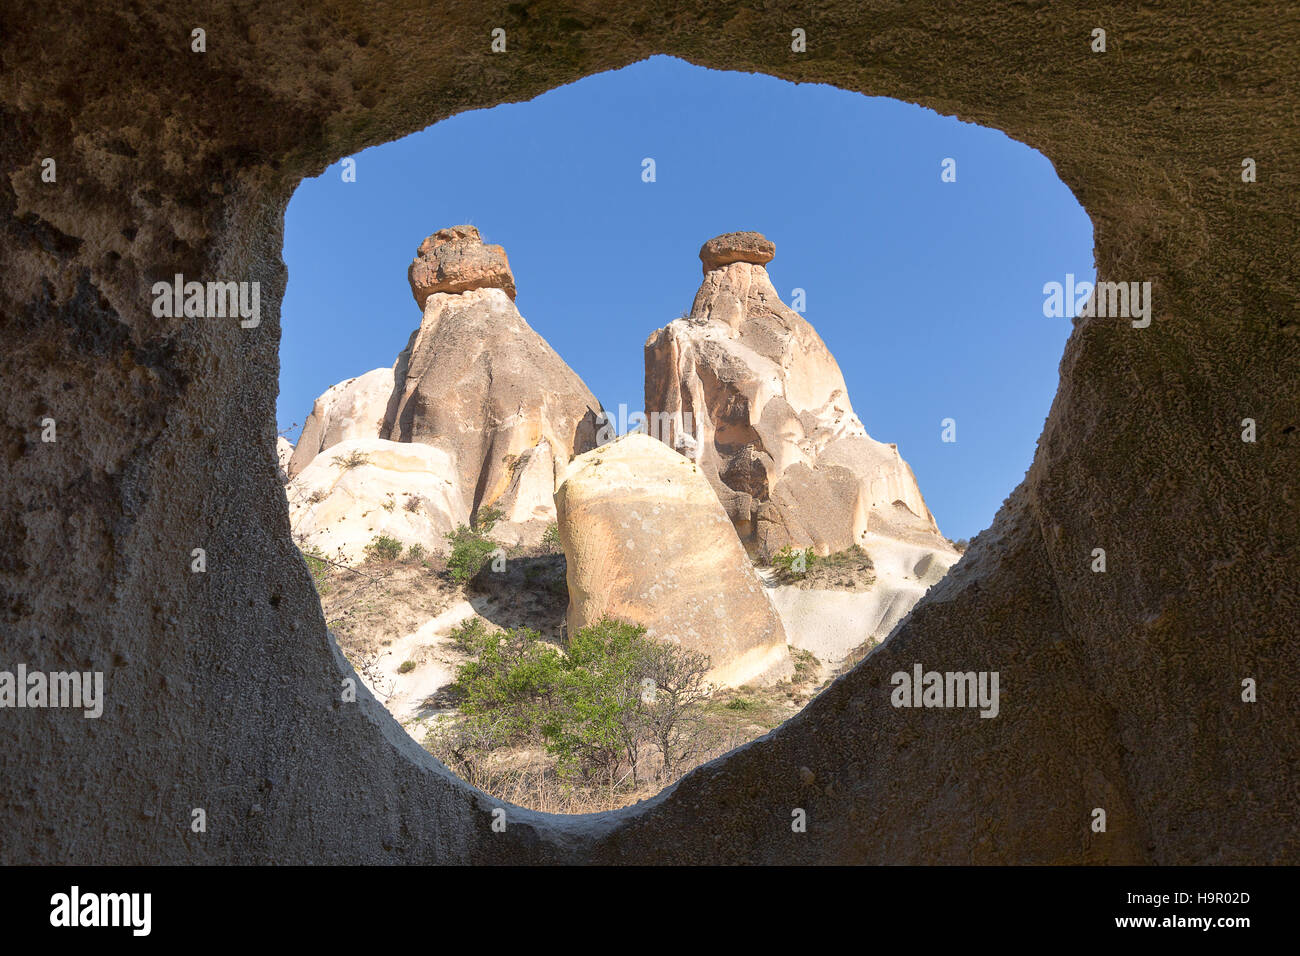 Fairy chimneys in Cappadocia, Turkey Stock Photo